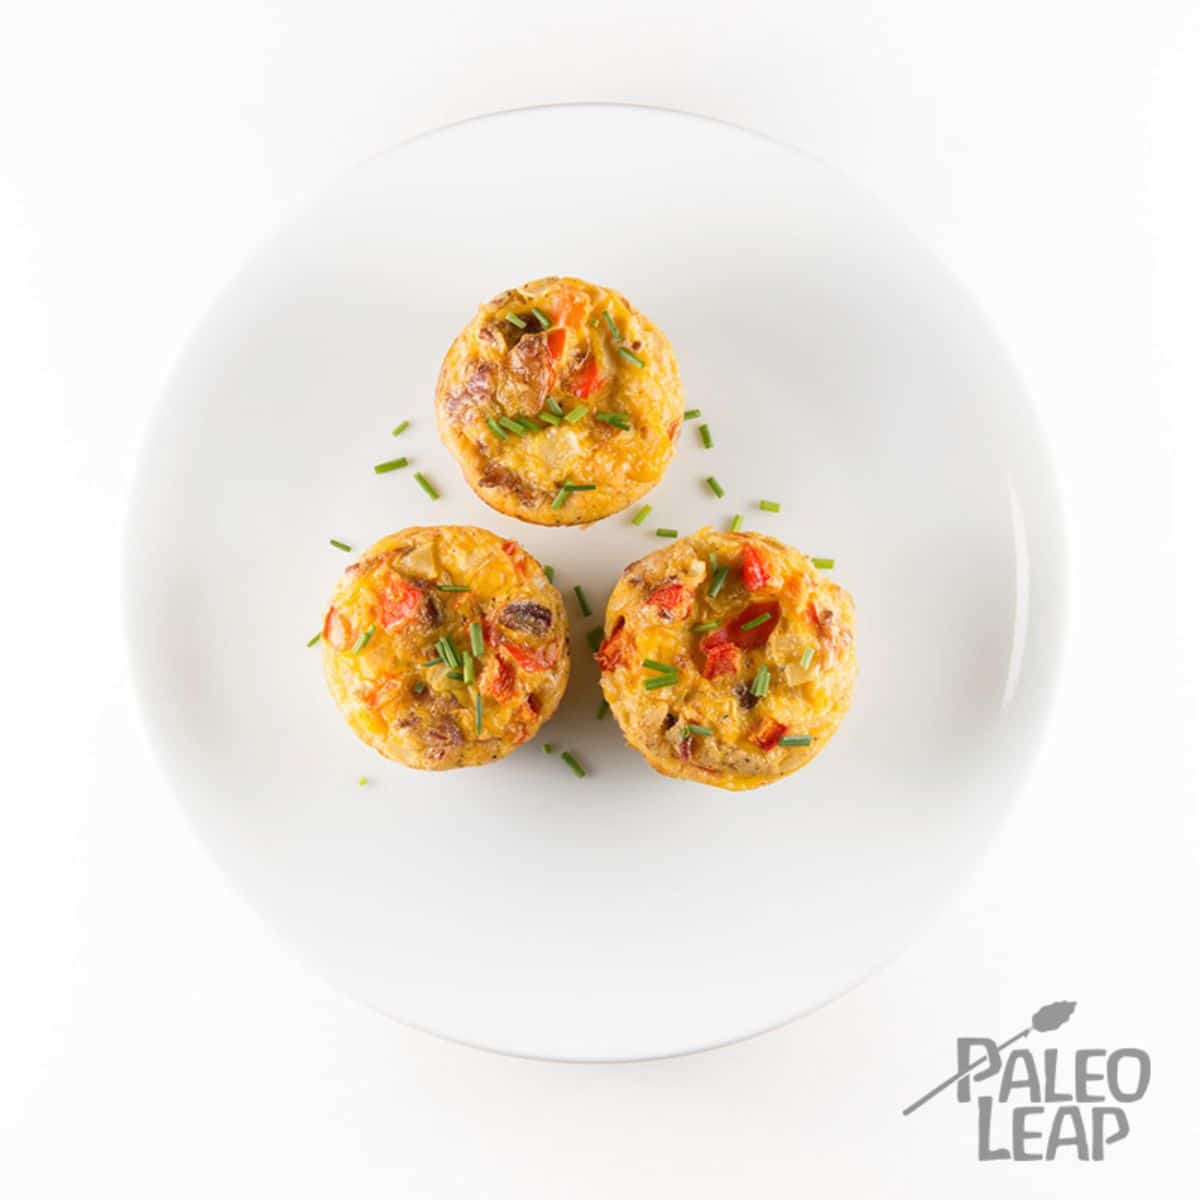 Paleo Egg Muffins recipe 